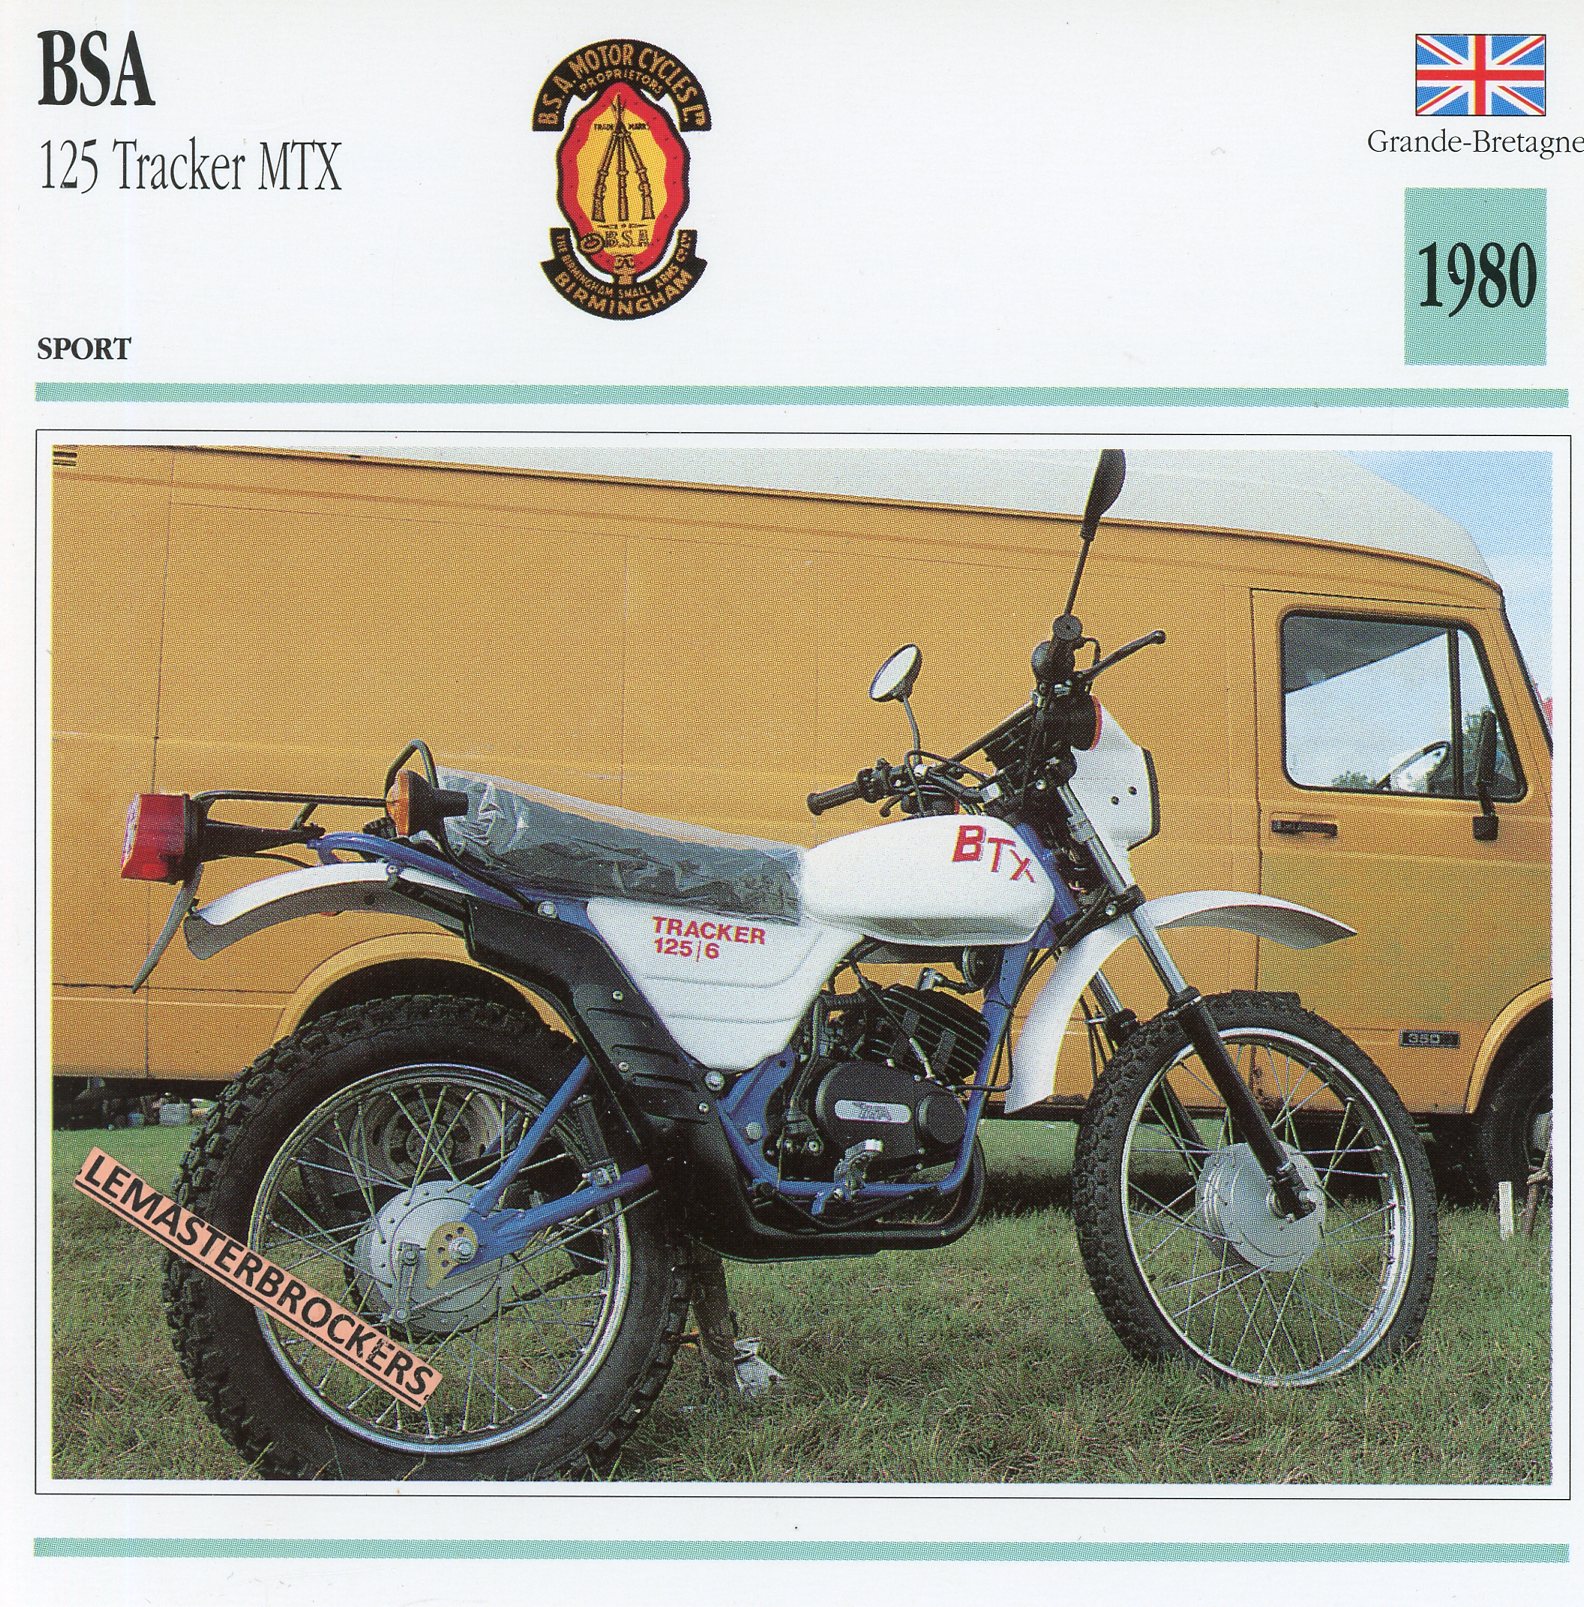 BSA-125-TRACKER-MTX-1980-FICHE-MOTO-CARDS-ATLAS-LEMASTERBROCKERS